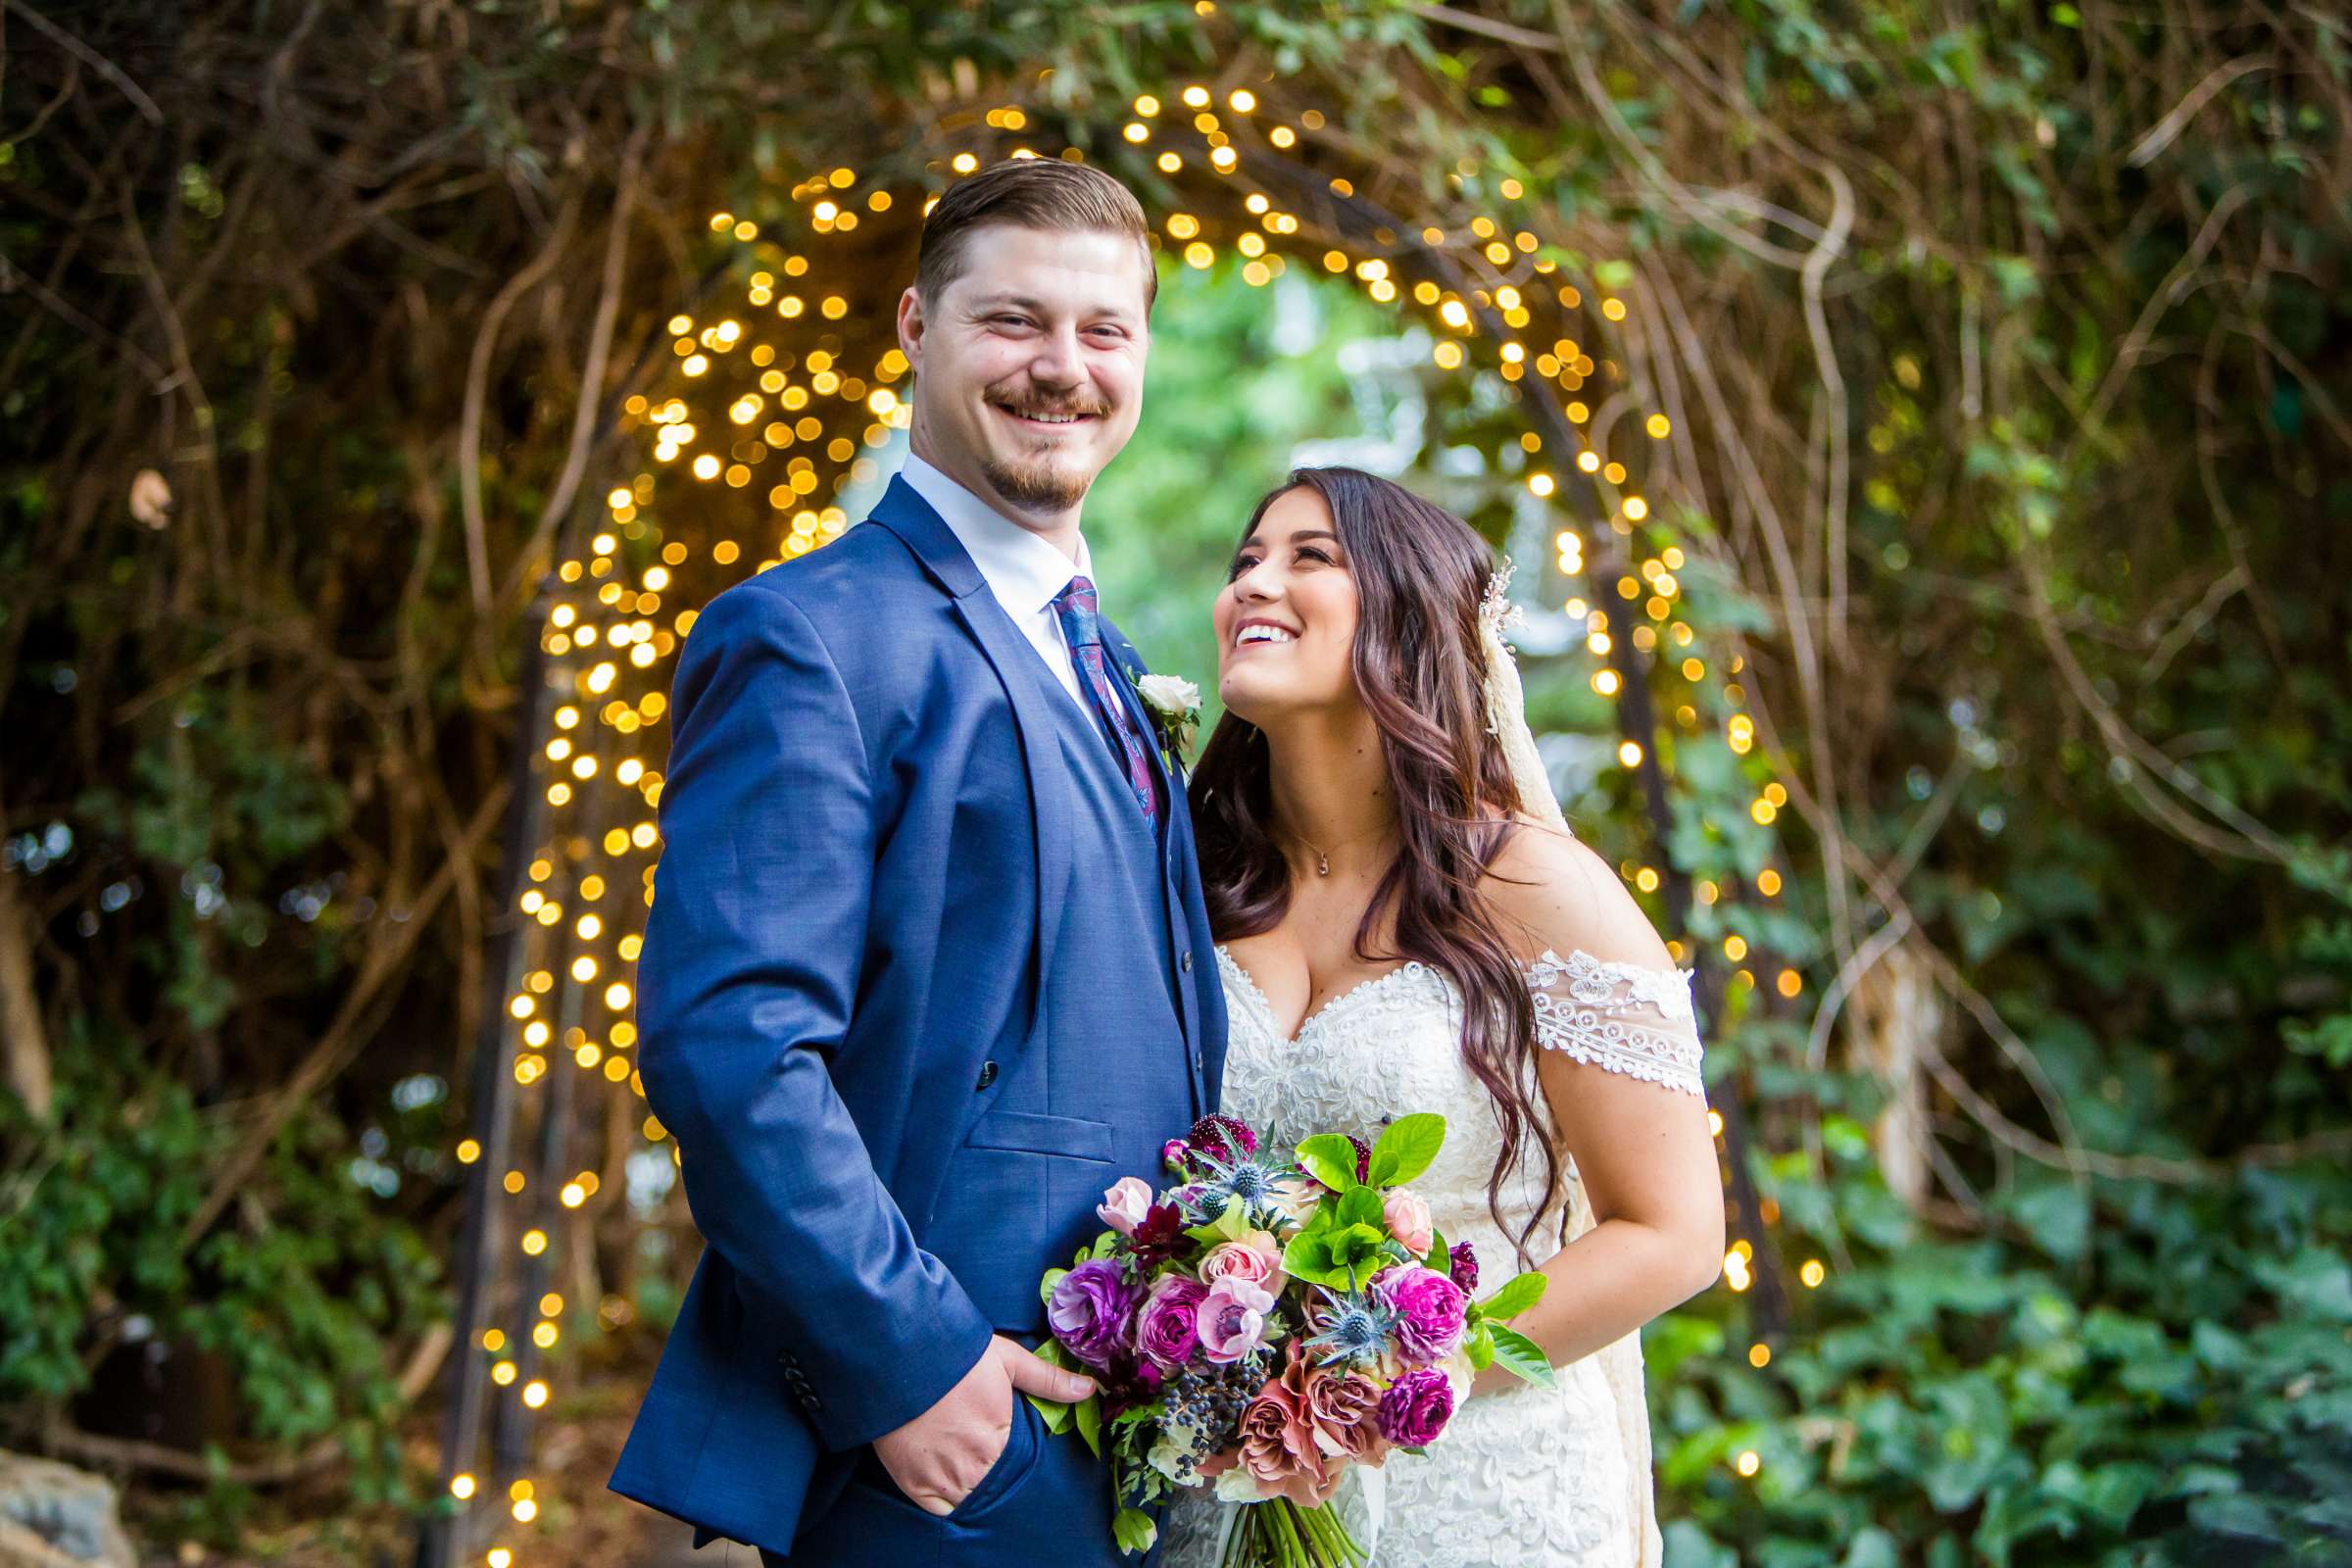 Twin Oaks House & Gardens Wedding Estate Wedding, Stephanie and Ilija Wedding Photo #24 by True Photography